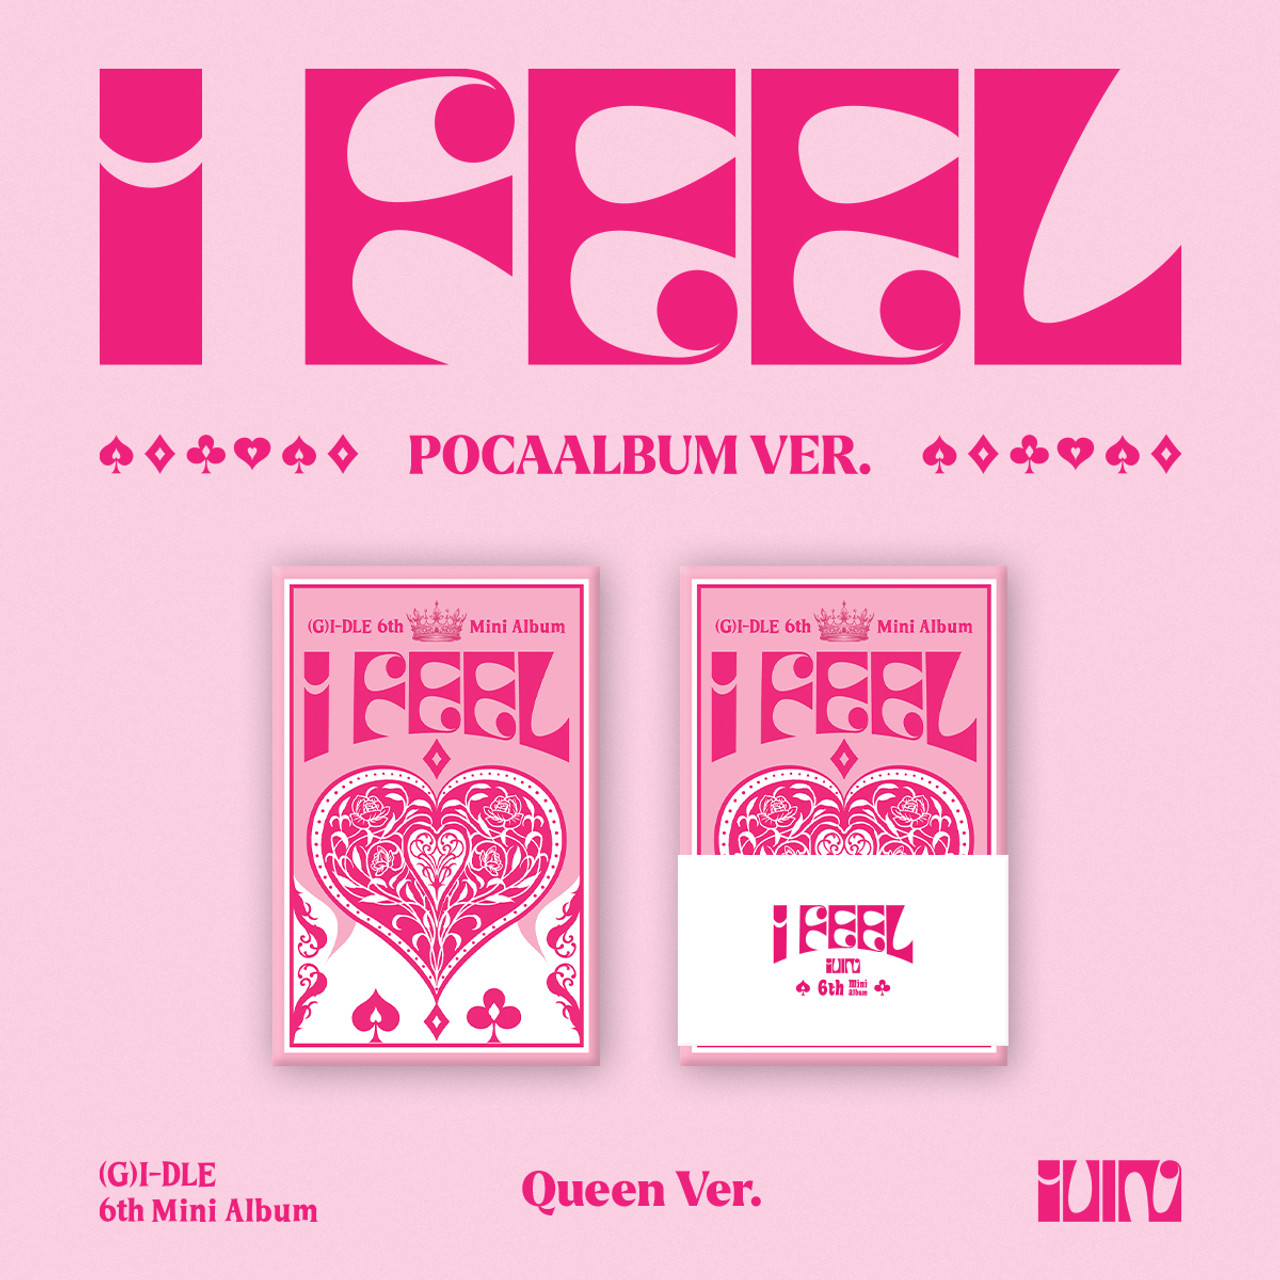 G)I-DLE - 6th Mini Album [I feel] PocaAlbum Ver. (Queen Ver.) - interAsia